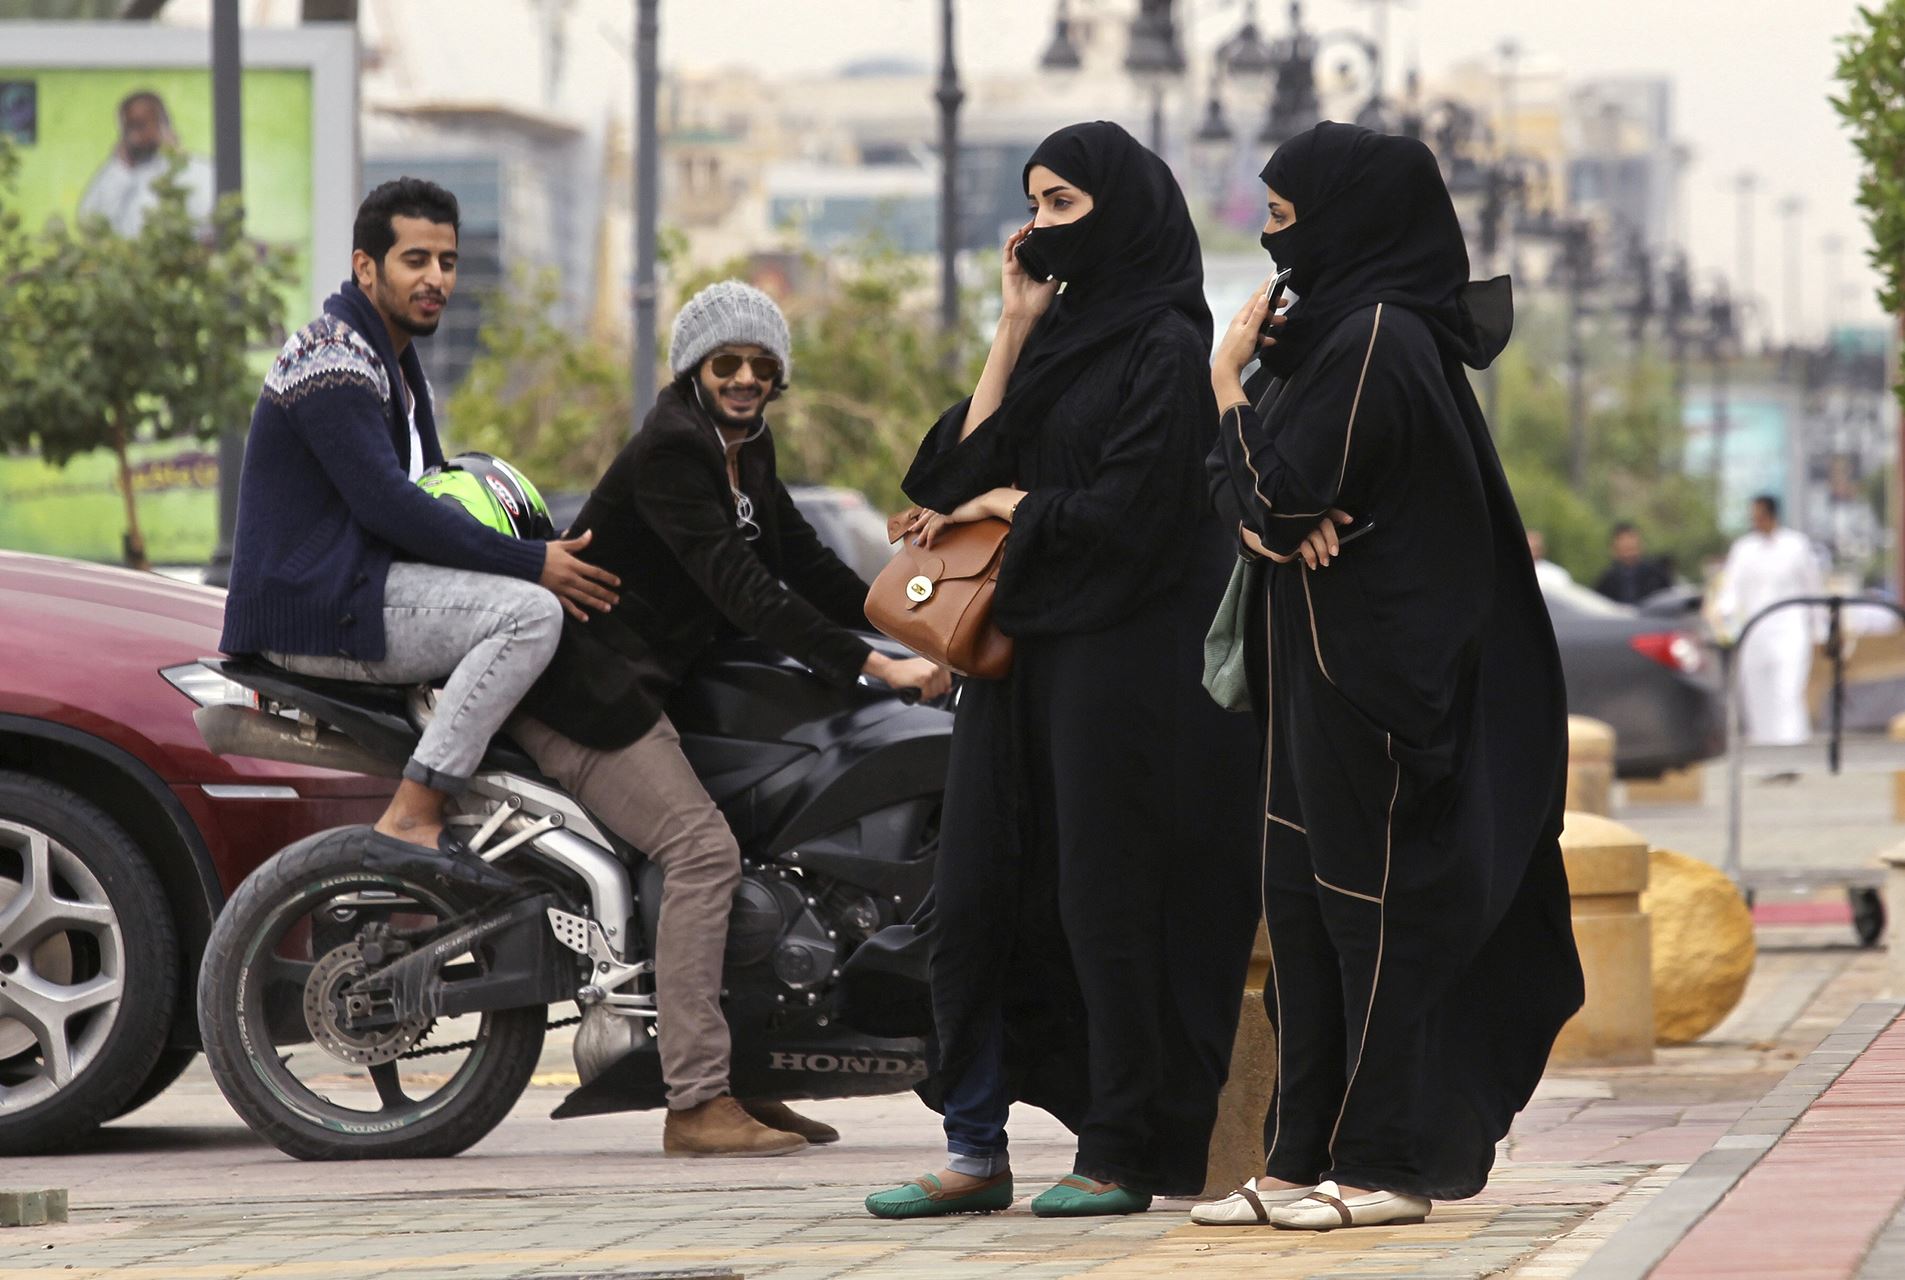 Mulheres Vão Poder Conduzir Motos Na Arábia Saudita Motonews Andar De Moto